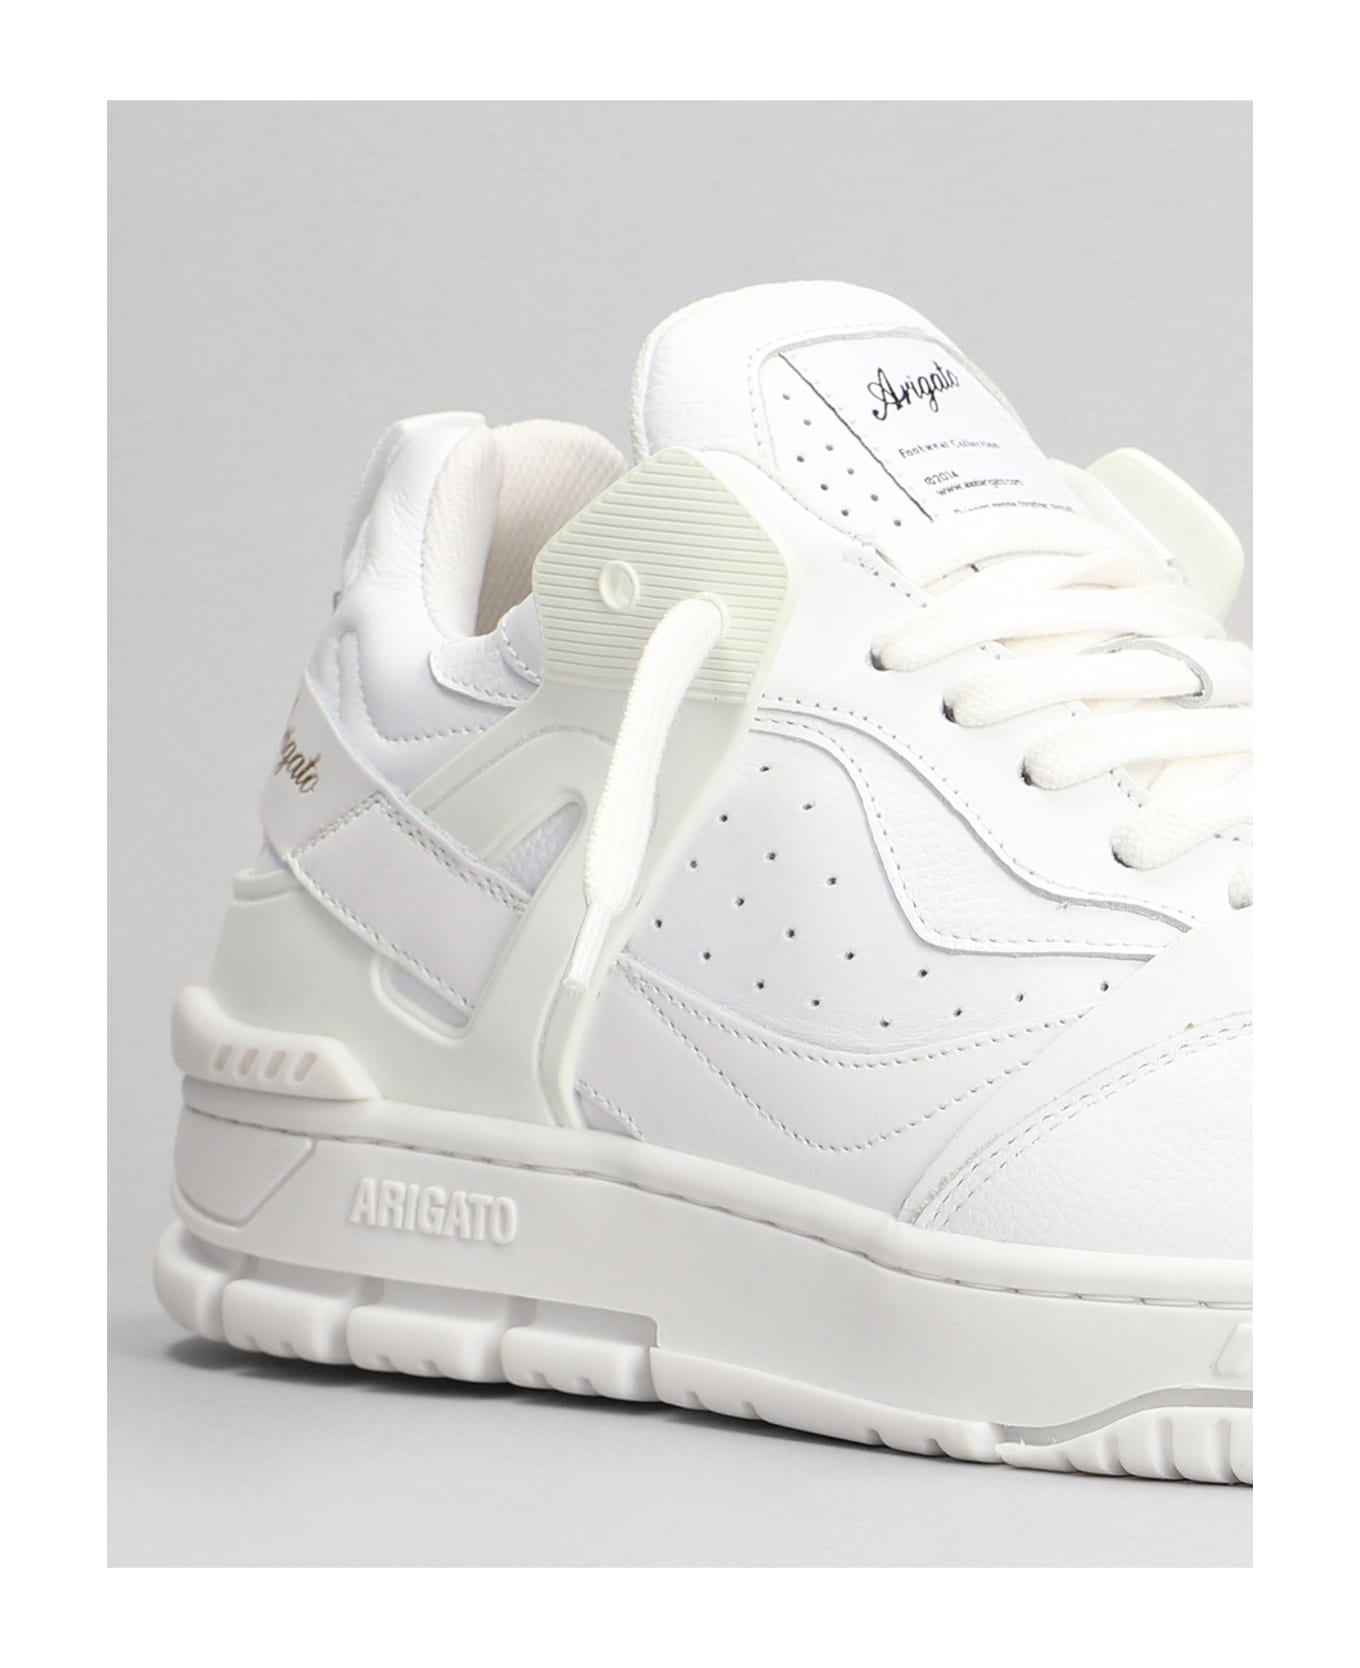 Axel Arigato Astro Sneakers In White Leather - white